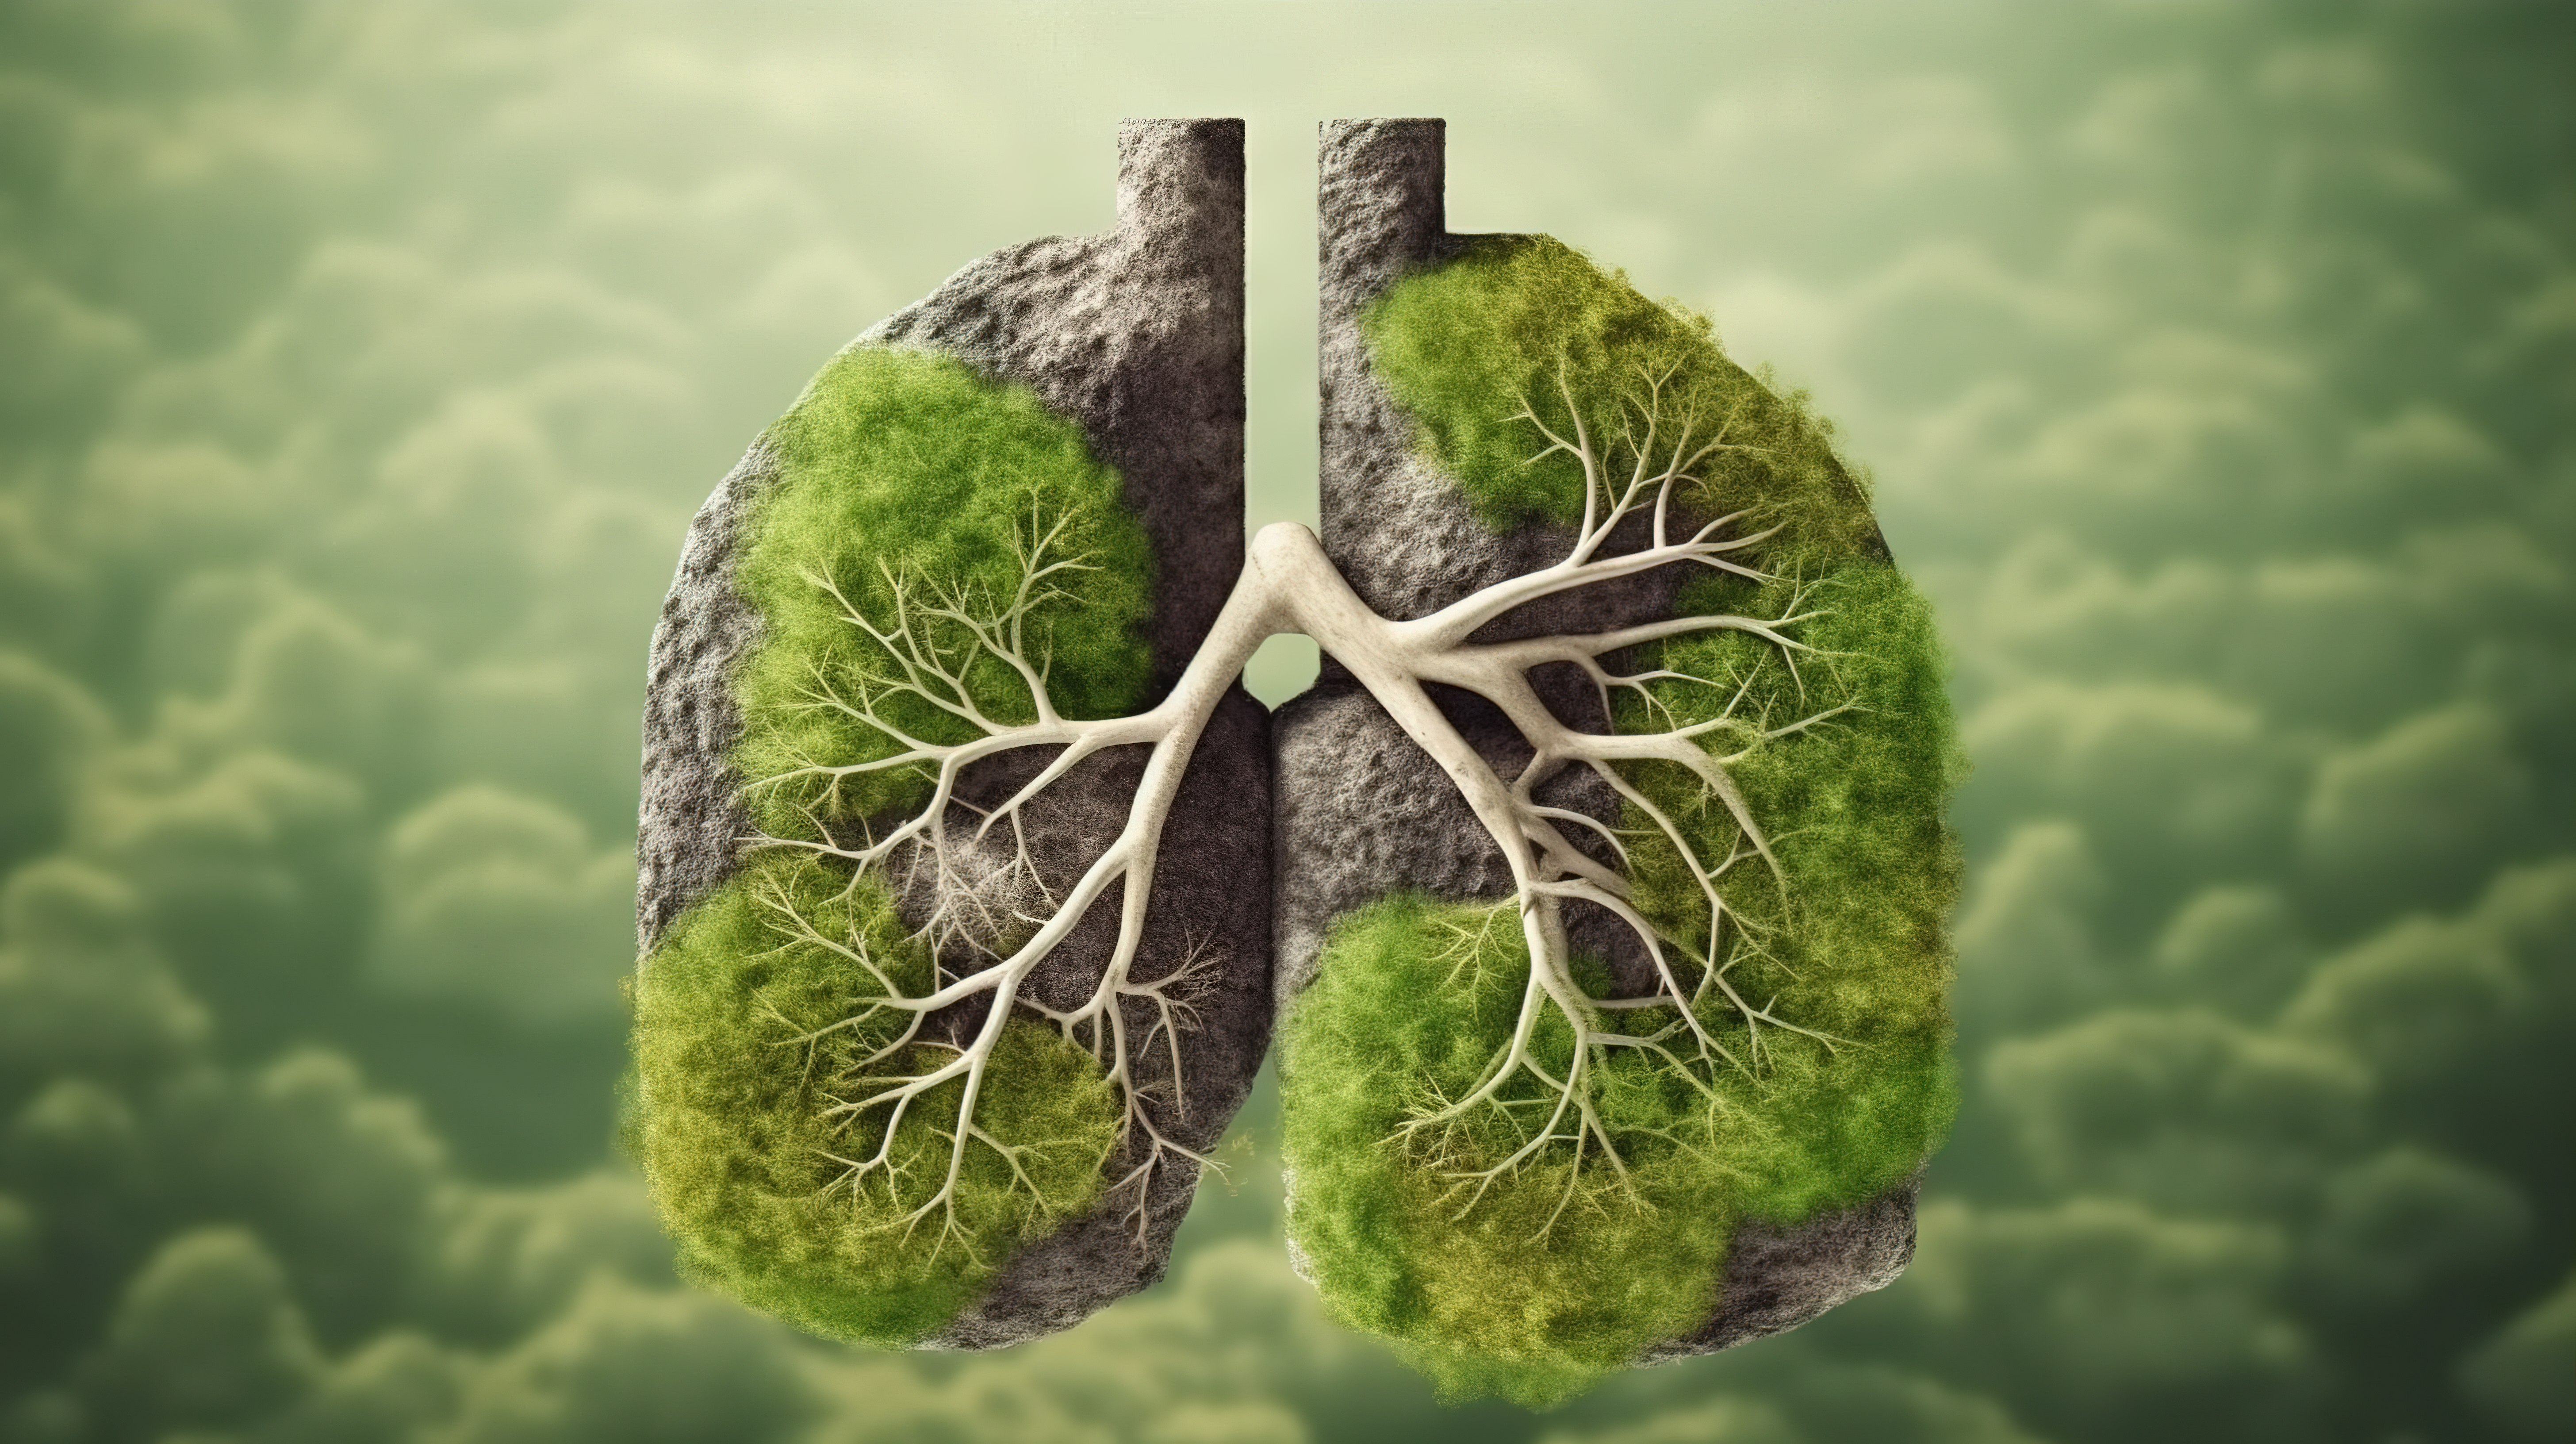 绿草形成肺部的形状，而岩石地面纹理则创建 3D 插图图片